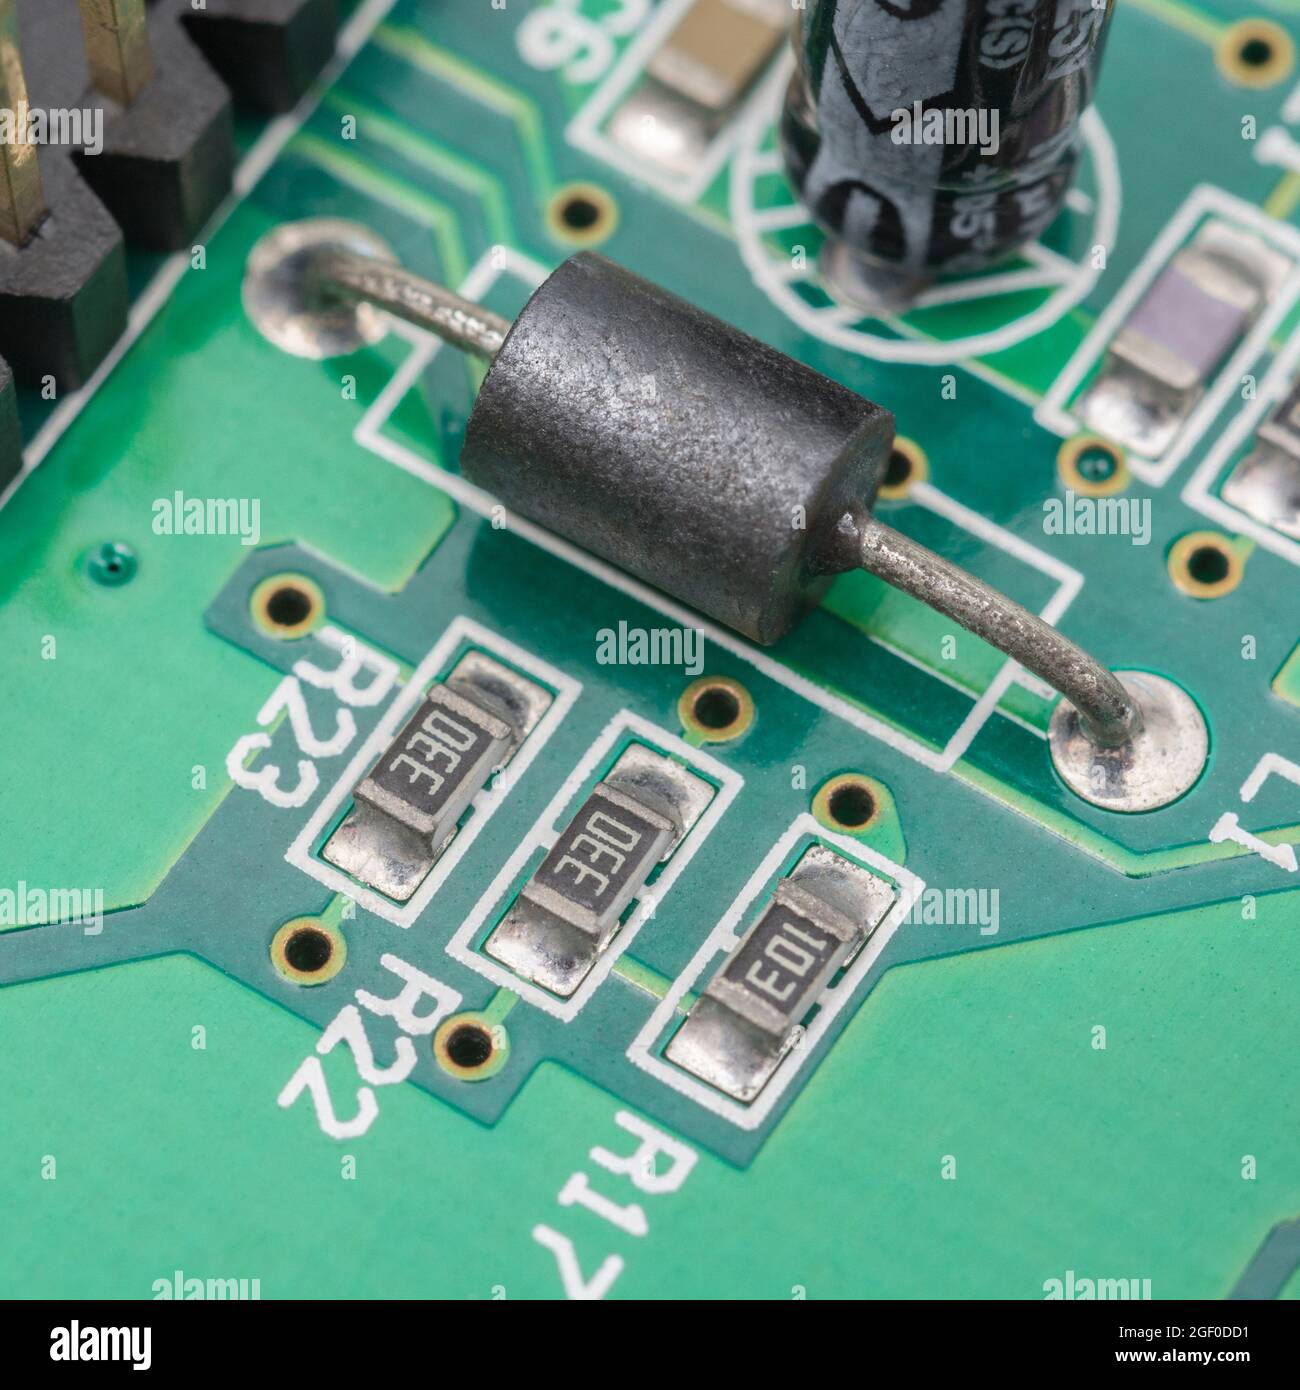 Primo piano del componente in ferrite nera a foro passante simile a un resistore sulla scheda a circuito stampato + resistori più piccoli oblunghi SM / a montaggio superficiale. Foto Stock